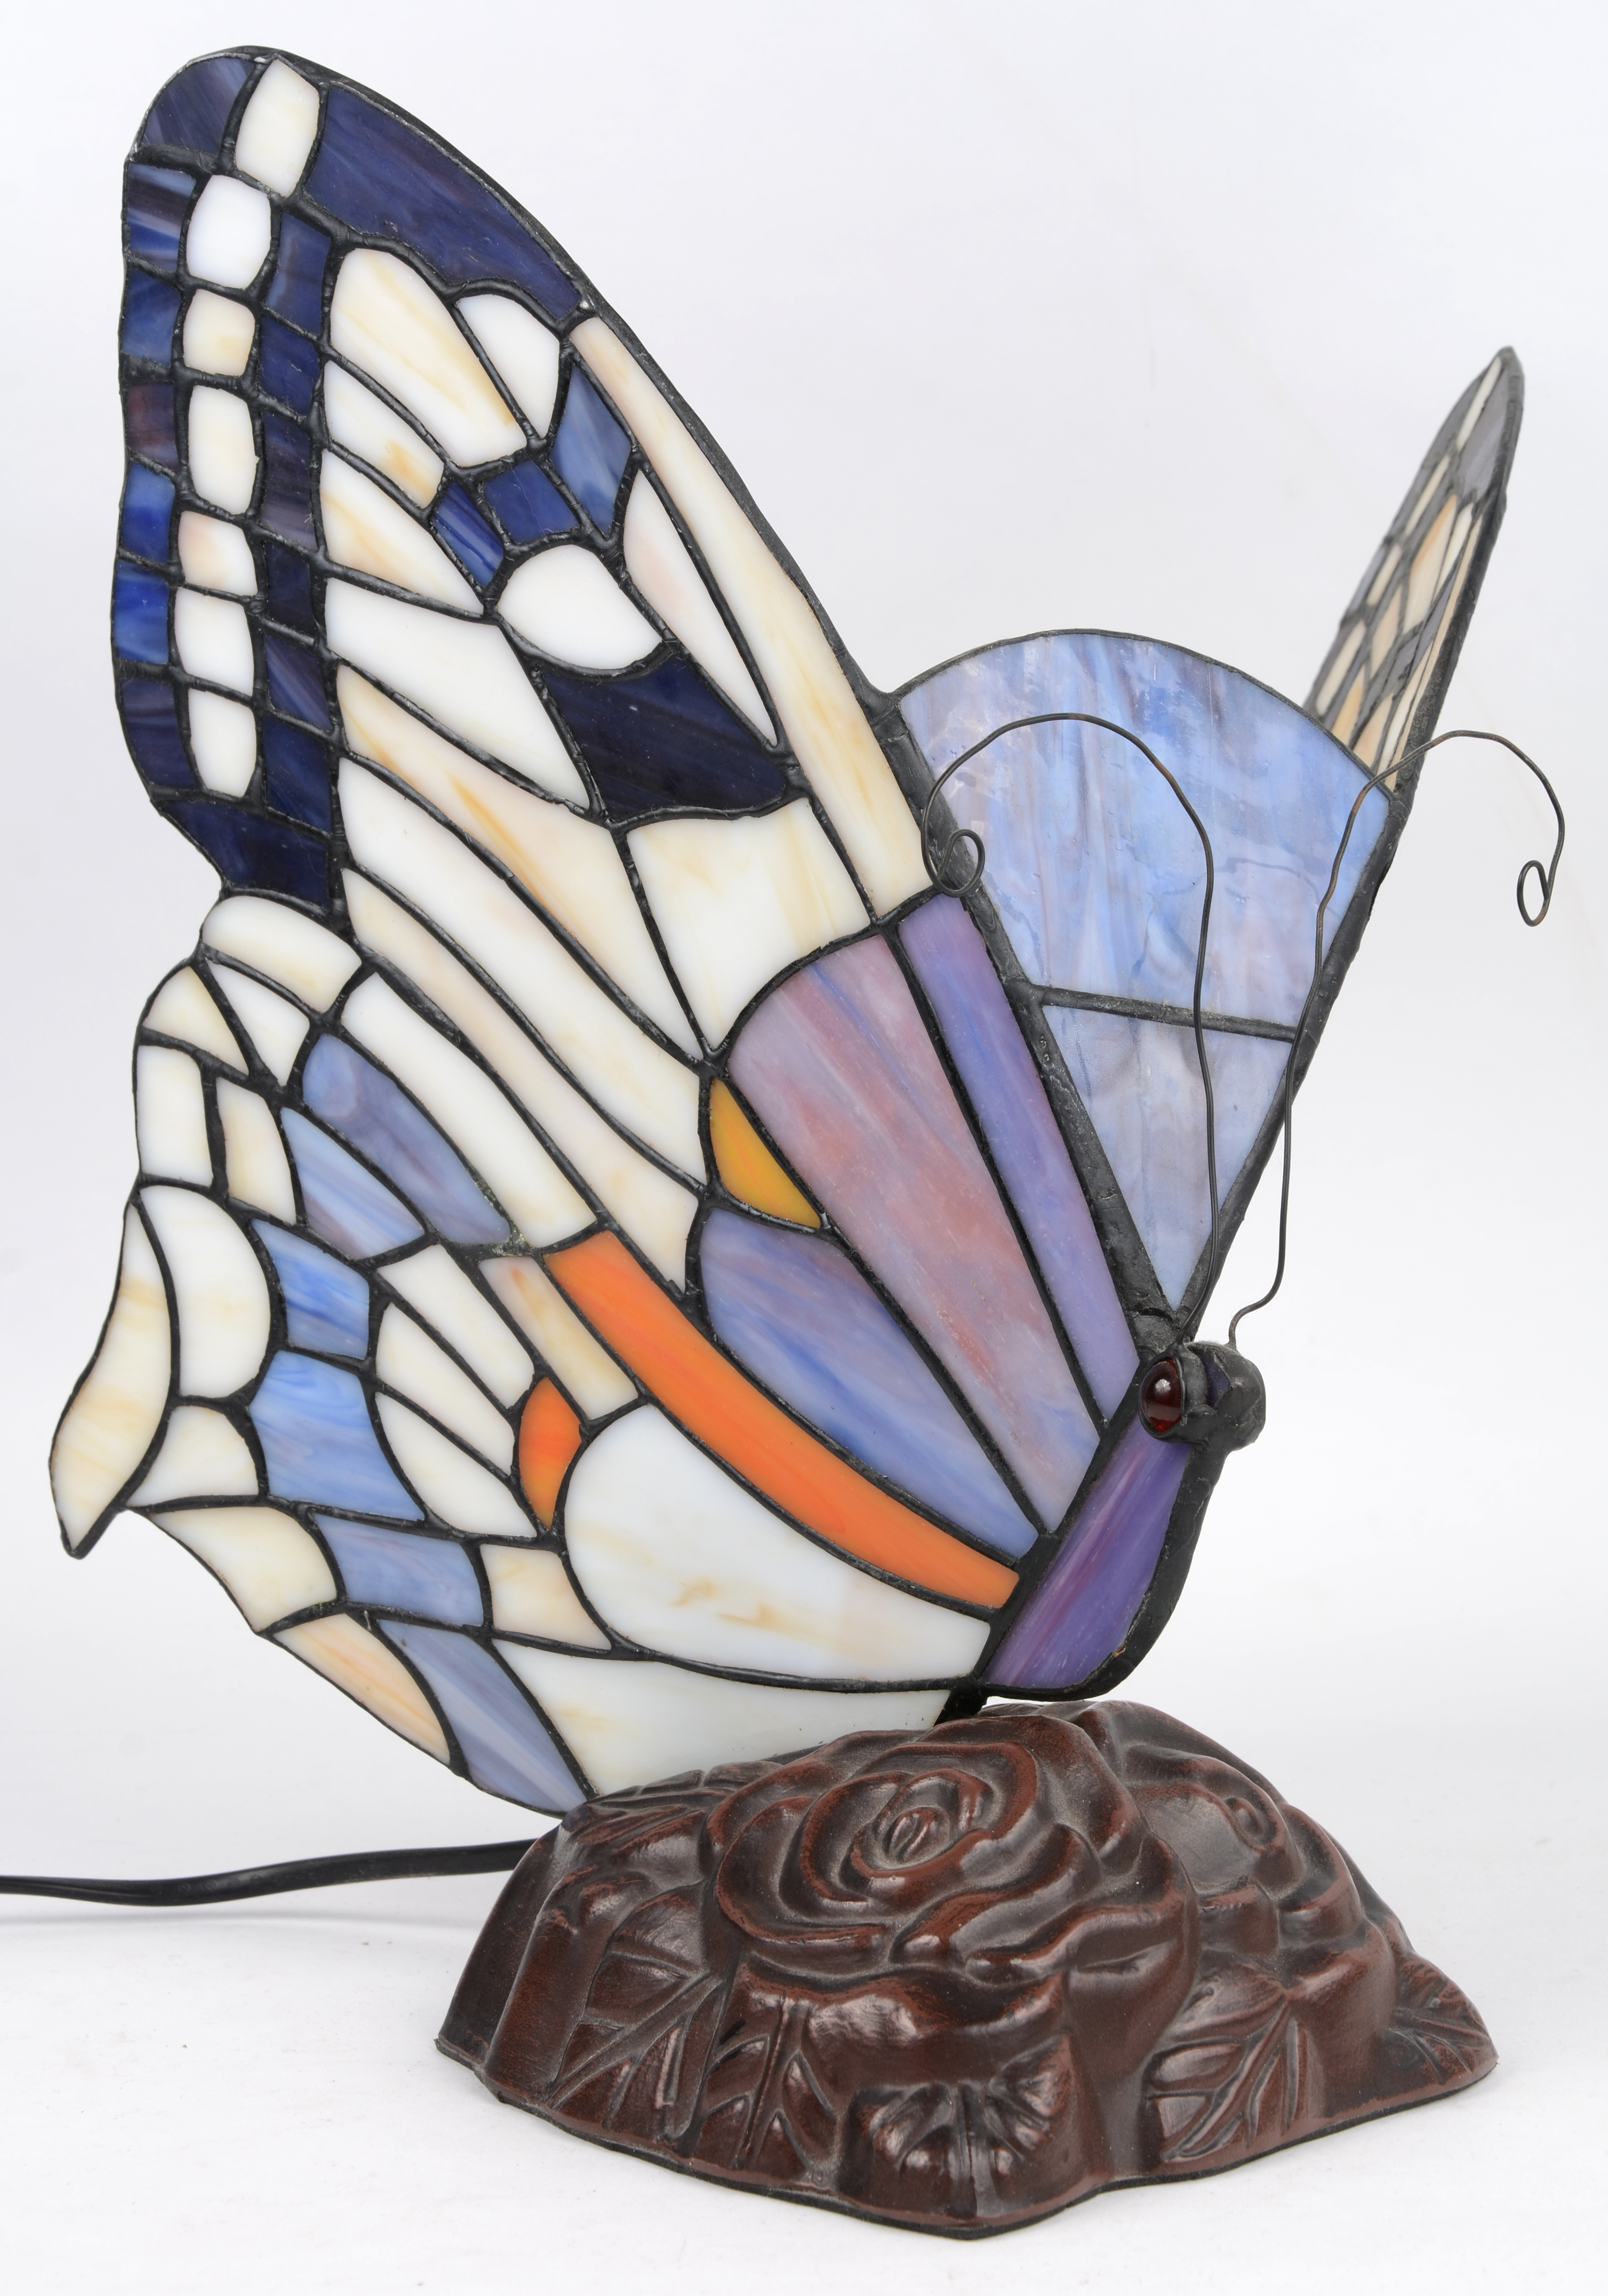 aanvulling Arrangement Assortiment Een lampje in de vorm van een vlinder in glas in lood. – Jordaens N.V.  Veilinghuis